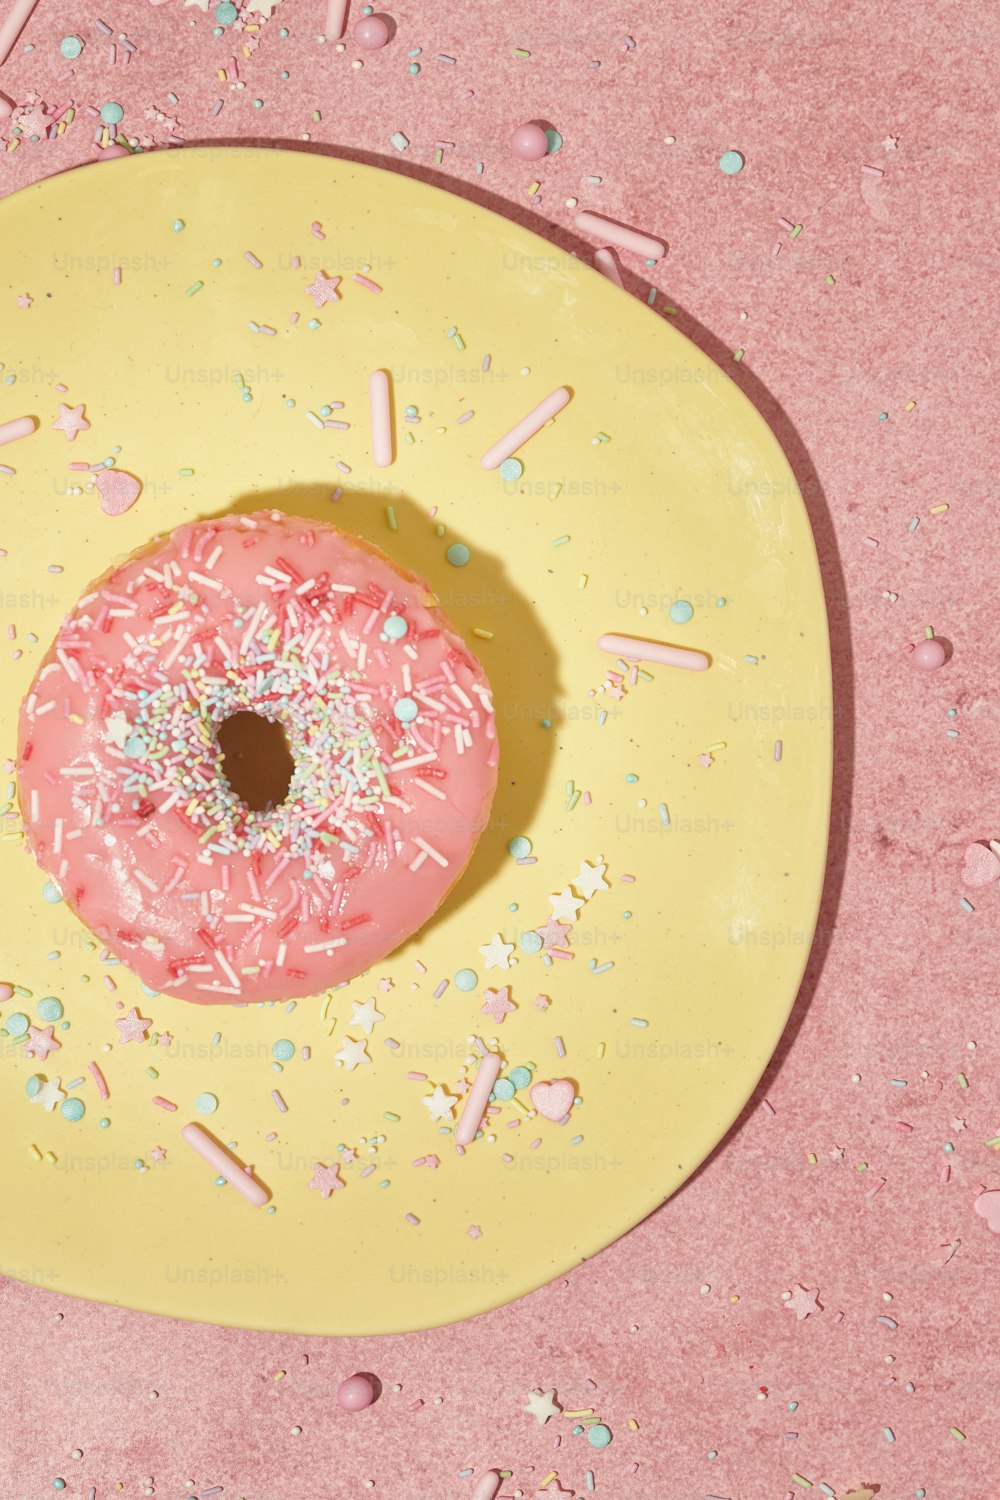 ein rosa gefrosteter Donut mit Streuseln auf einem gelben Teller